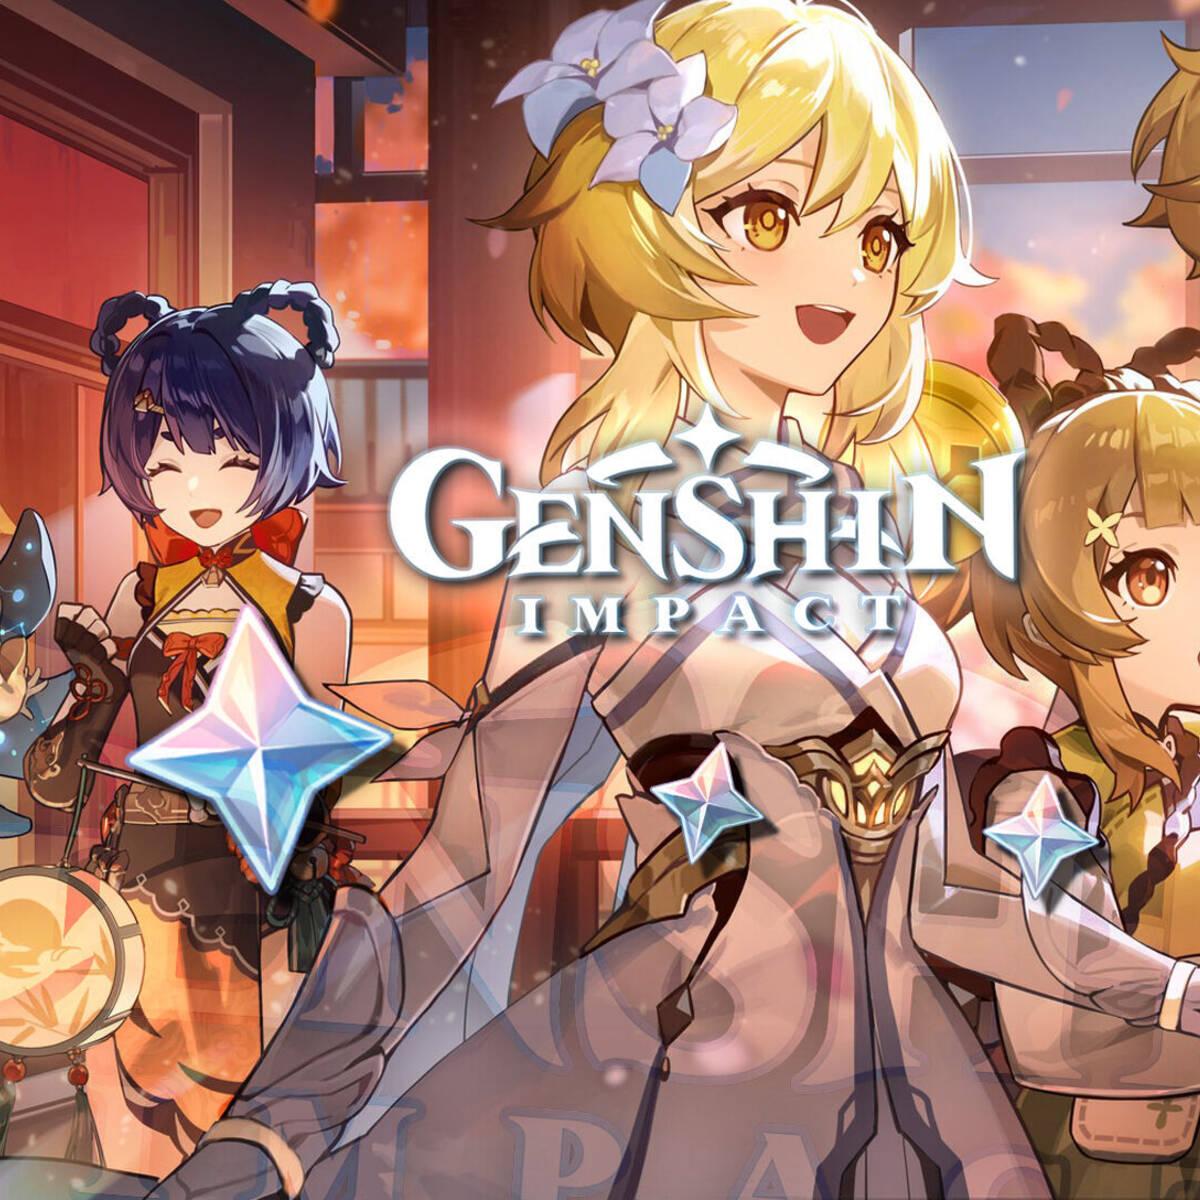 Códigos Primogem Genshin Impact novembro de 2023 - Creo Gaming